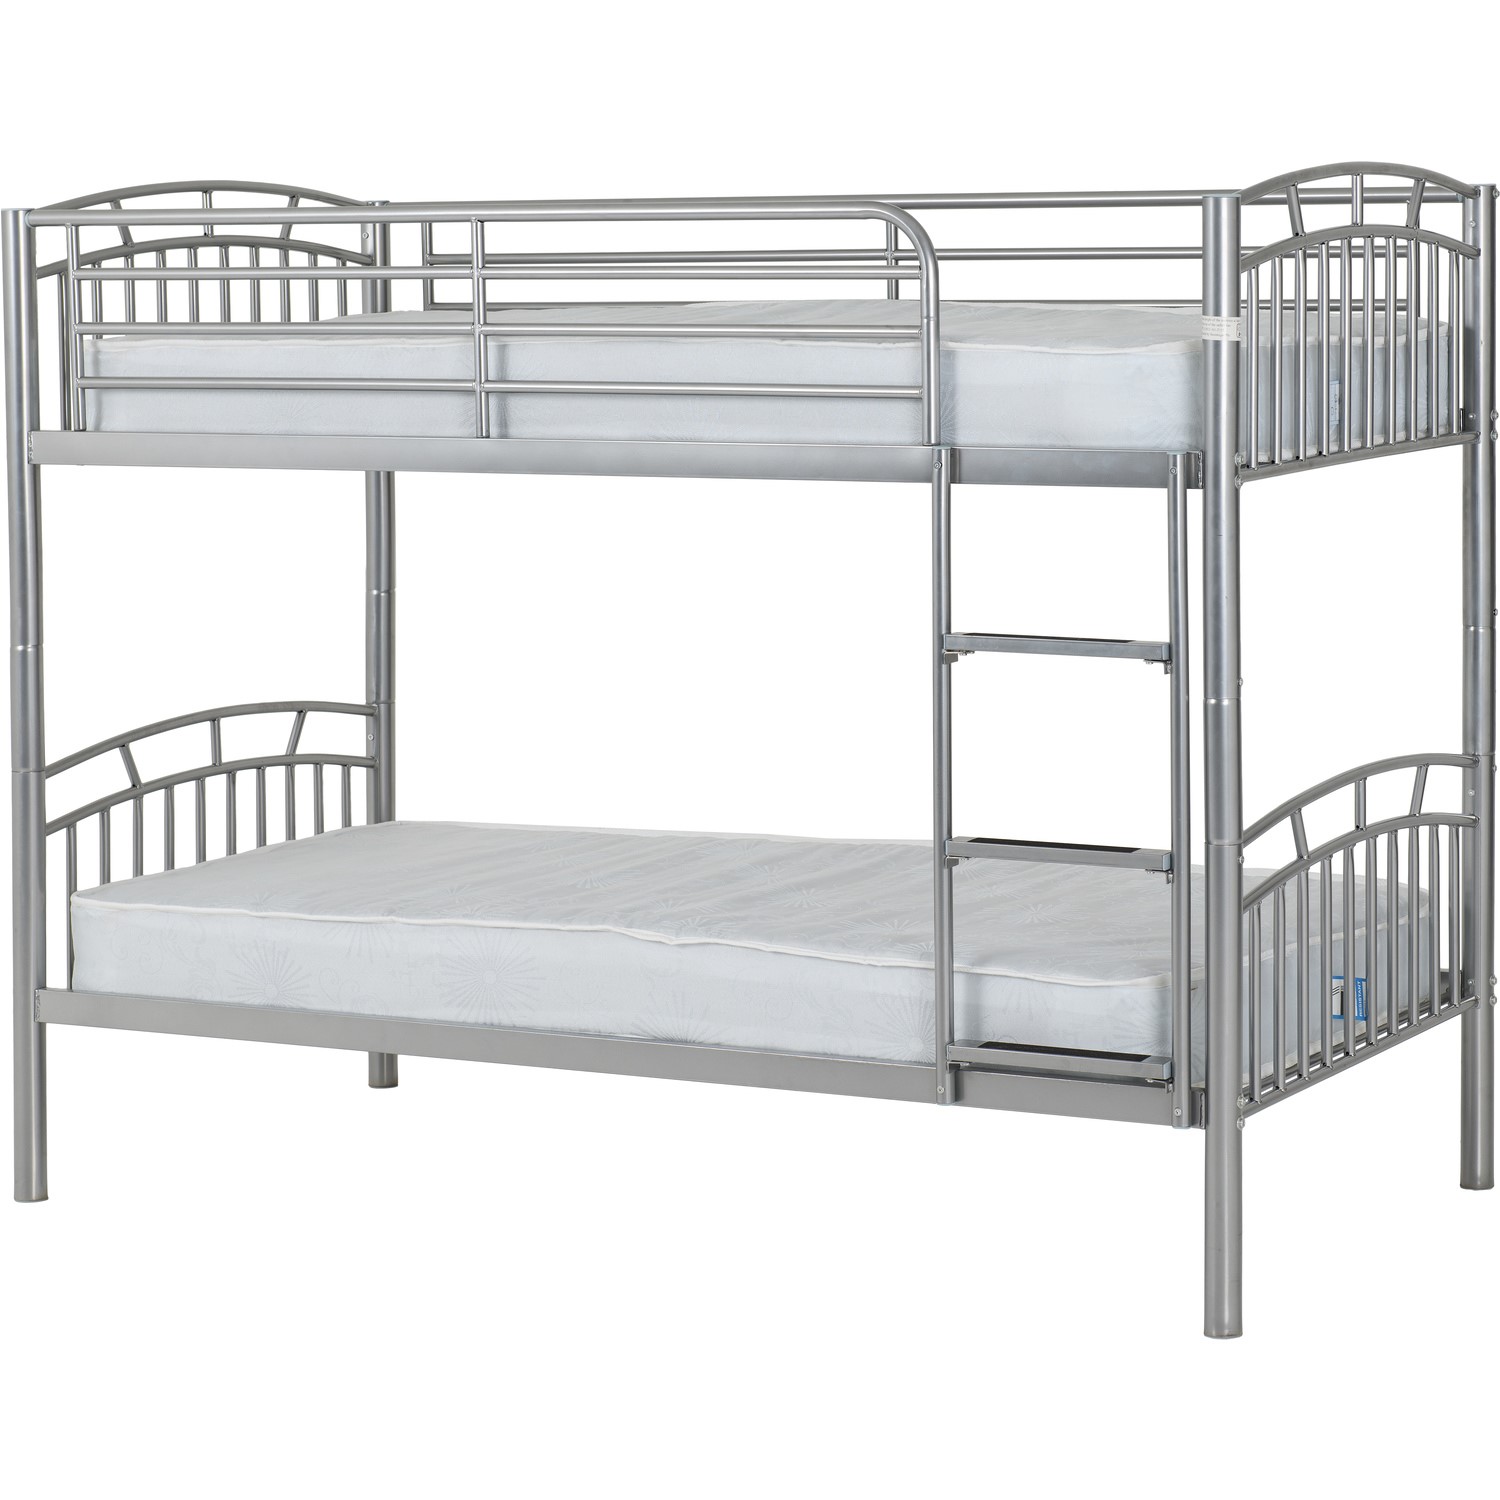 Photo of Silver metal bunk bed - ventura - seconique